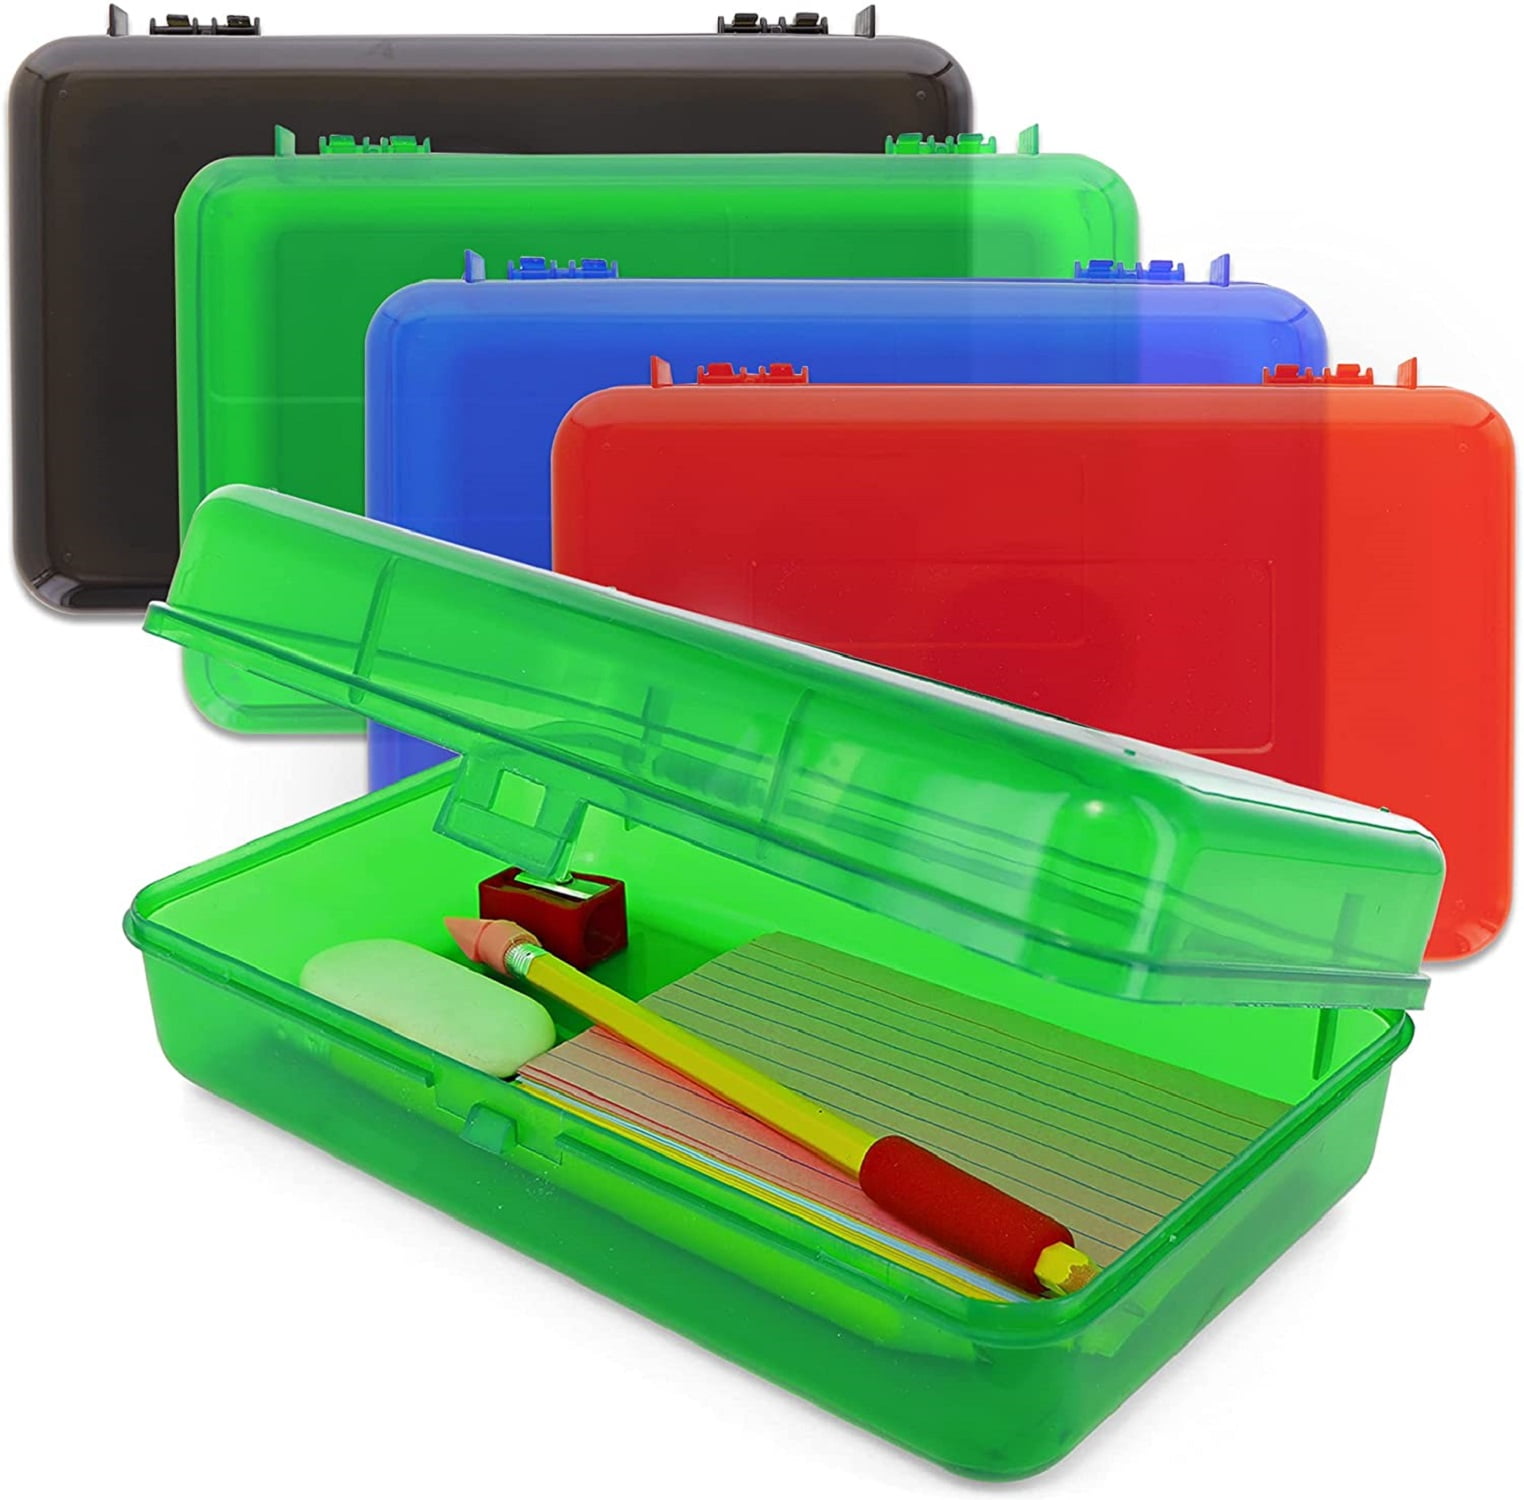 Emraw Regal Multipurpose Pencil Box Assorted Color Dots Plastic Pencil Case Box 